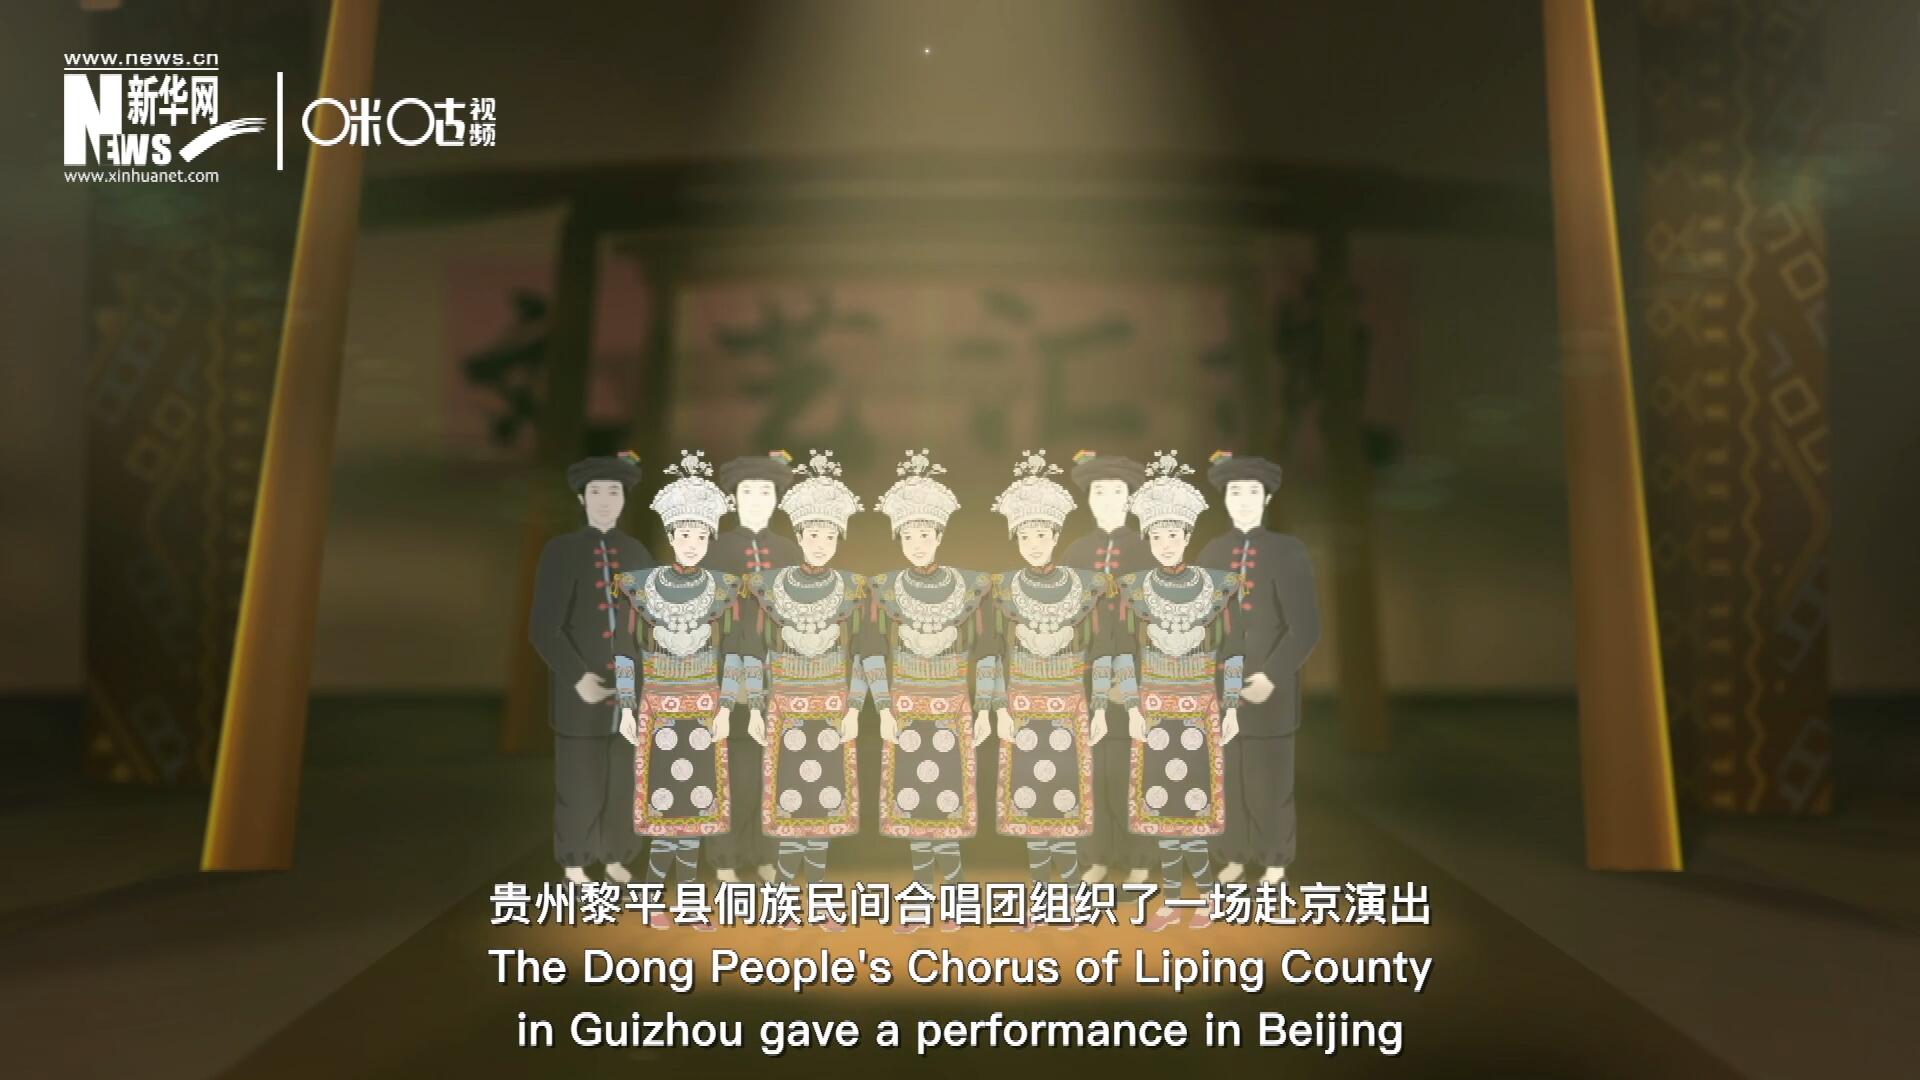 直到1959年10月，貴州黎平縣侗族民間合唱團組織了一場赴京演出 ，侗族大歌才邁出了走出深山的第一步，在首都的舞臺一炮而紅。